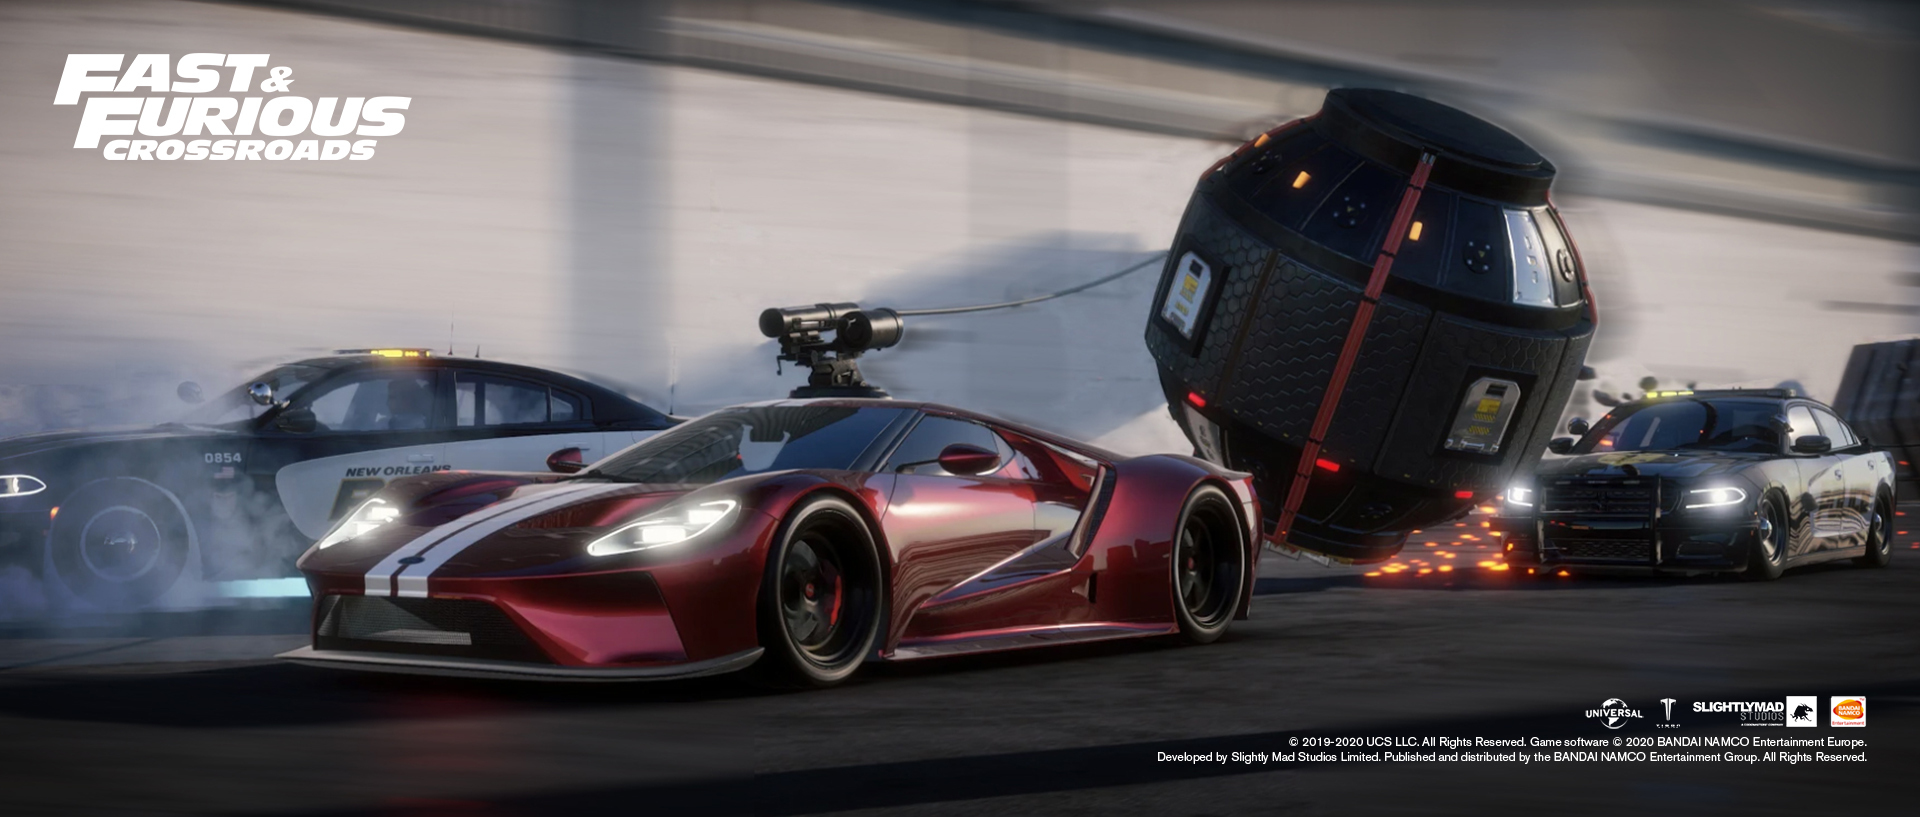 Nieuwe Fast & Furious Crossroads-releasedatum bekendgemaakt in actievolle gameplaytrailer